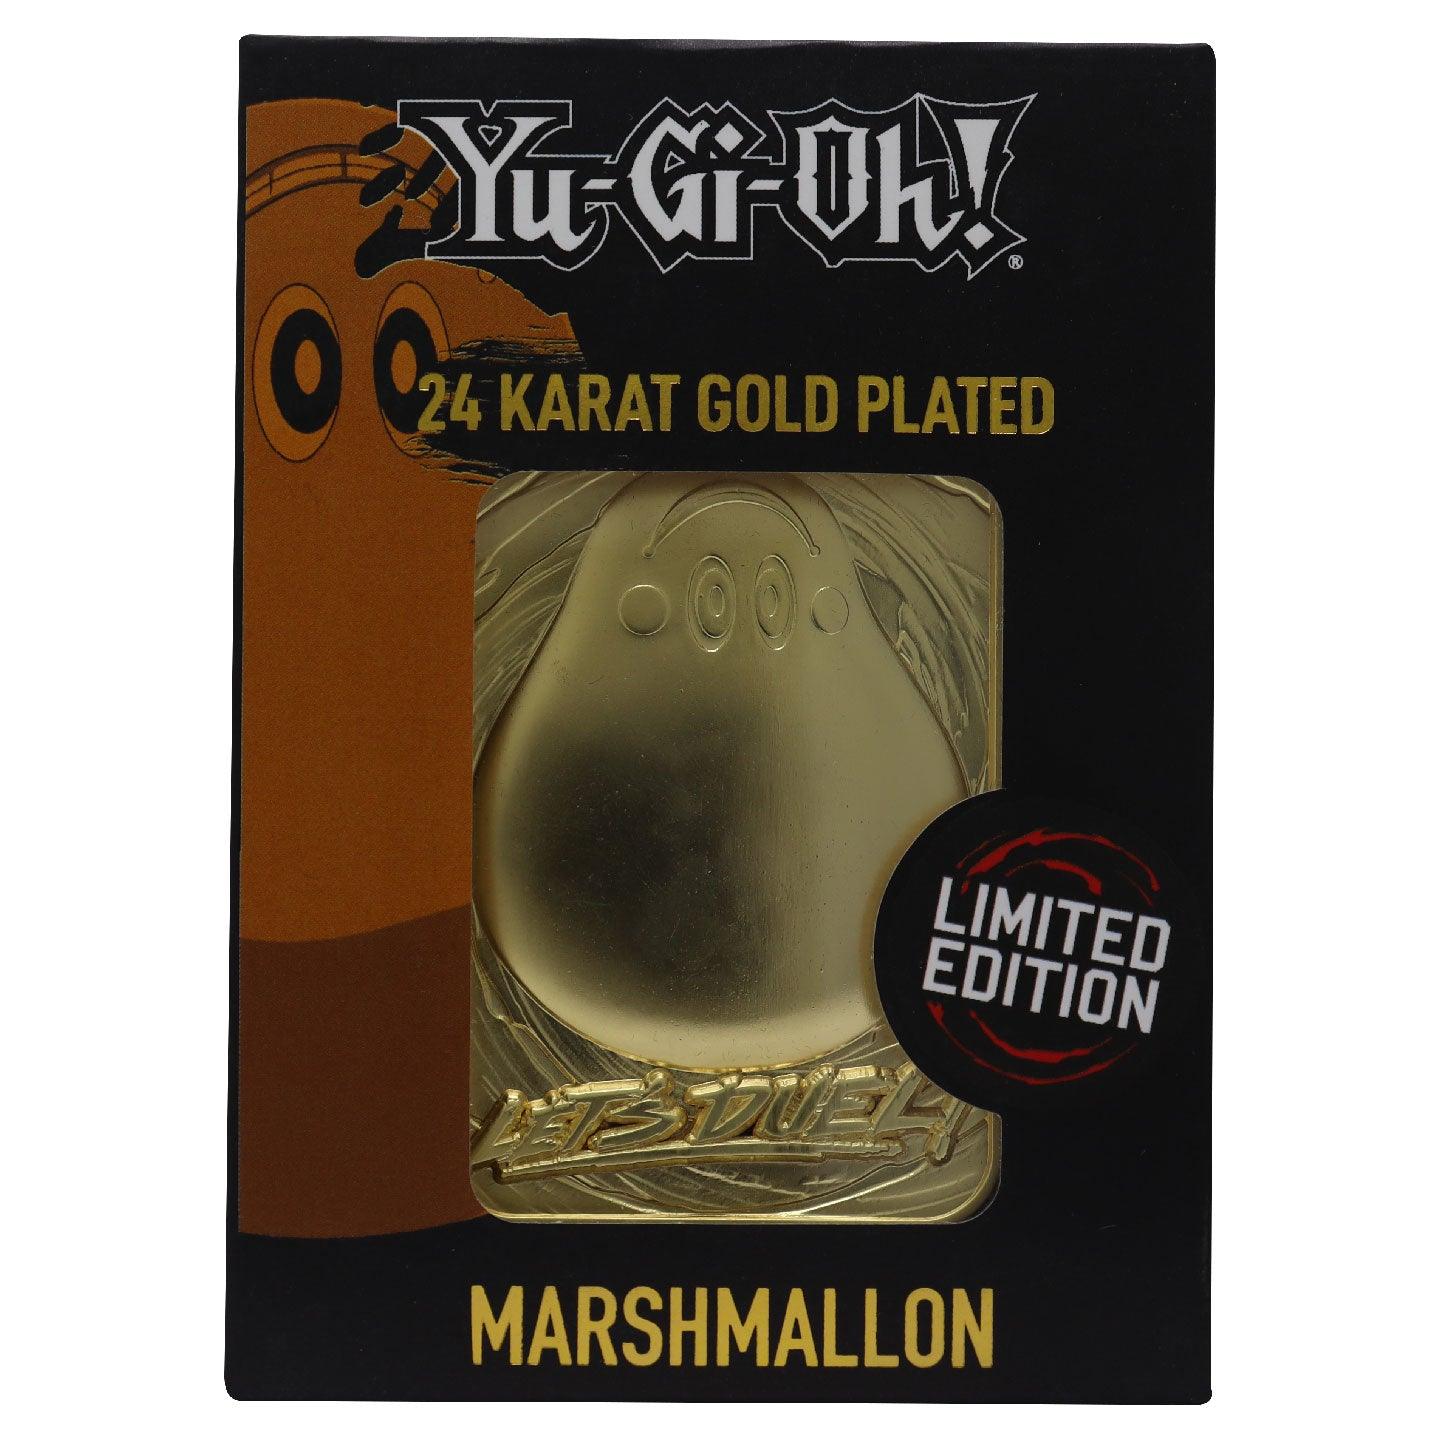 24K Ygo Marshmallon - Want a New Gadget